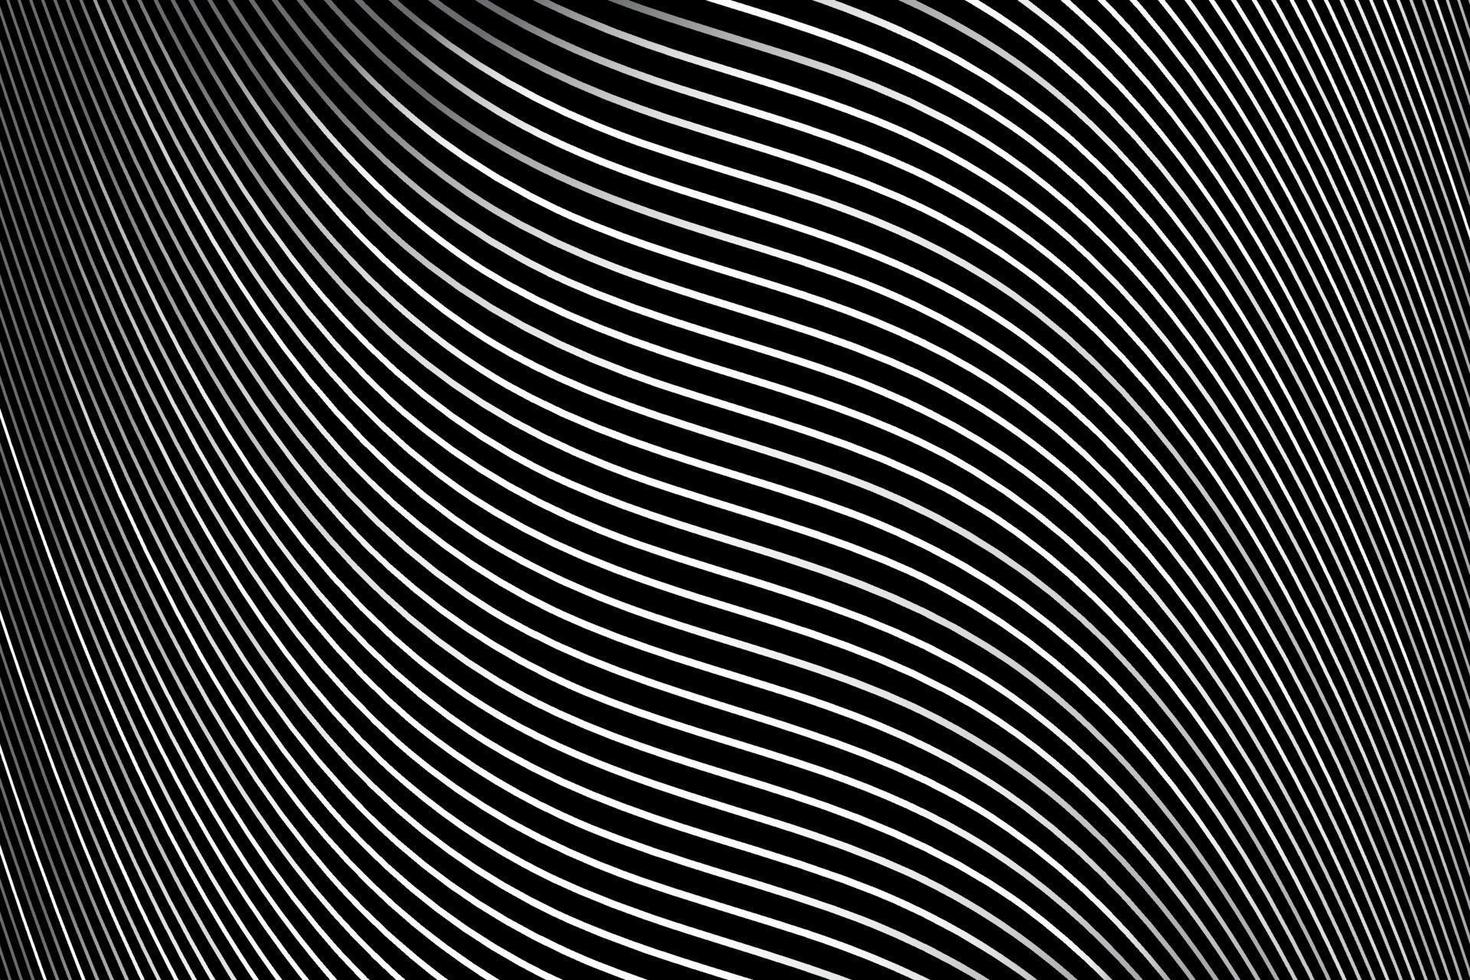 abstrait rayé diagonal déformé. vecteur incurvé tordu oblique, texture de lignes ondulées.